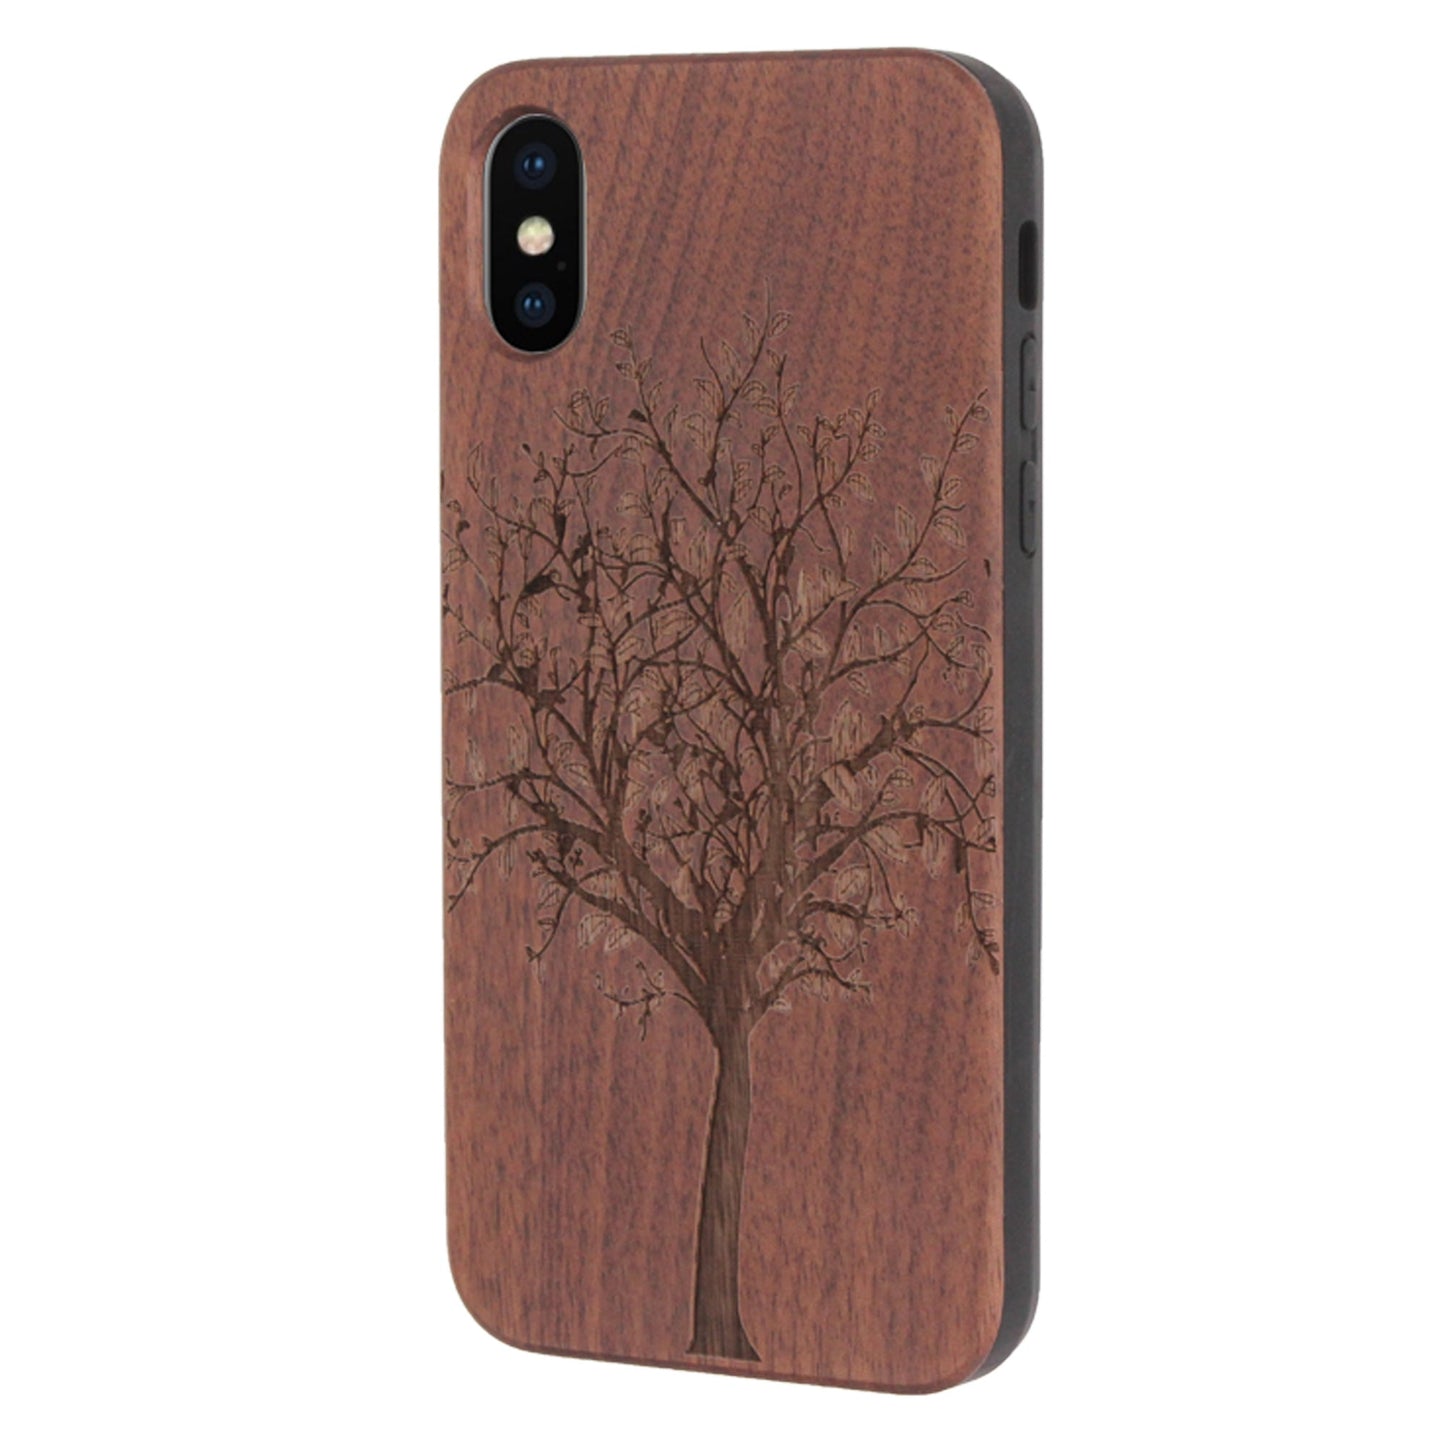 Lebensbaum Eden Case aus Nussbaumholz für iPhone X/XS